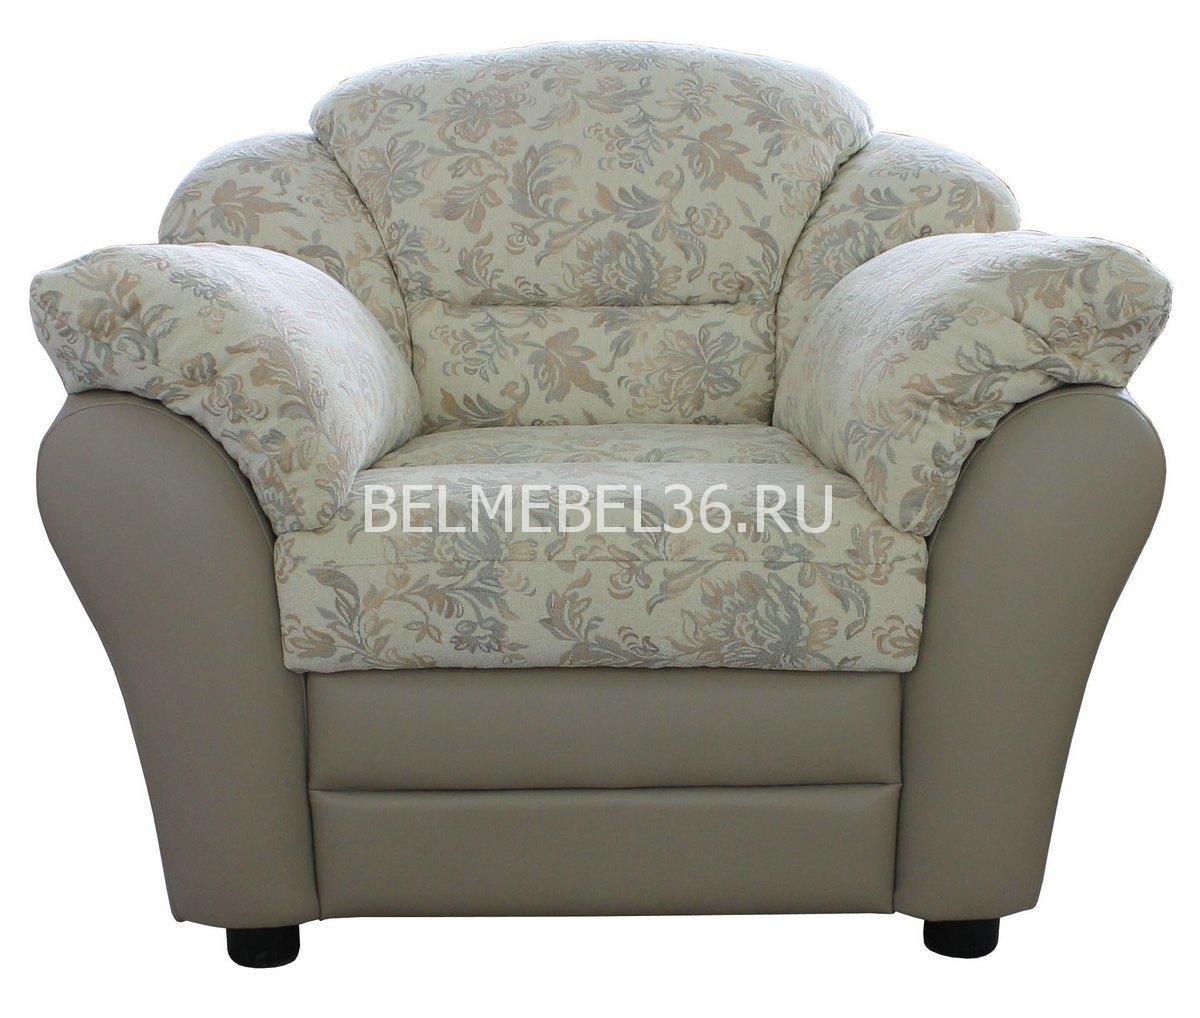 Кресло Сенатор (12) П-Д051 | Белорусская мебель в Воронеже